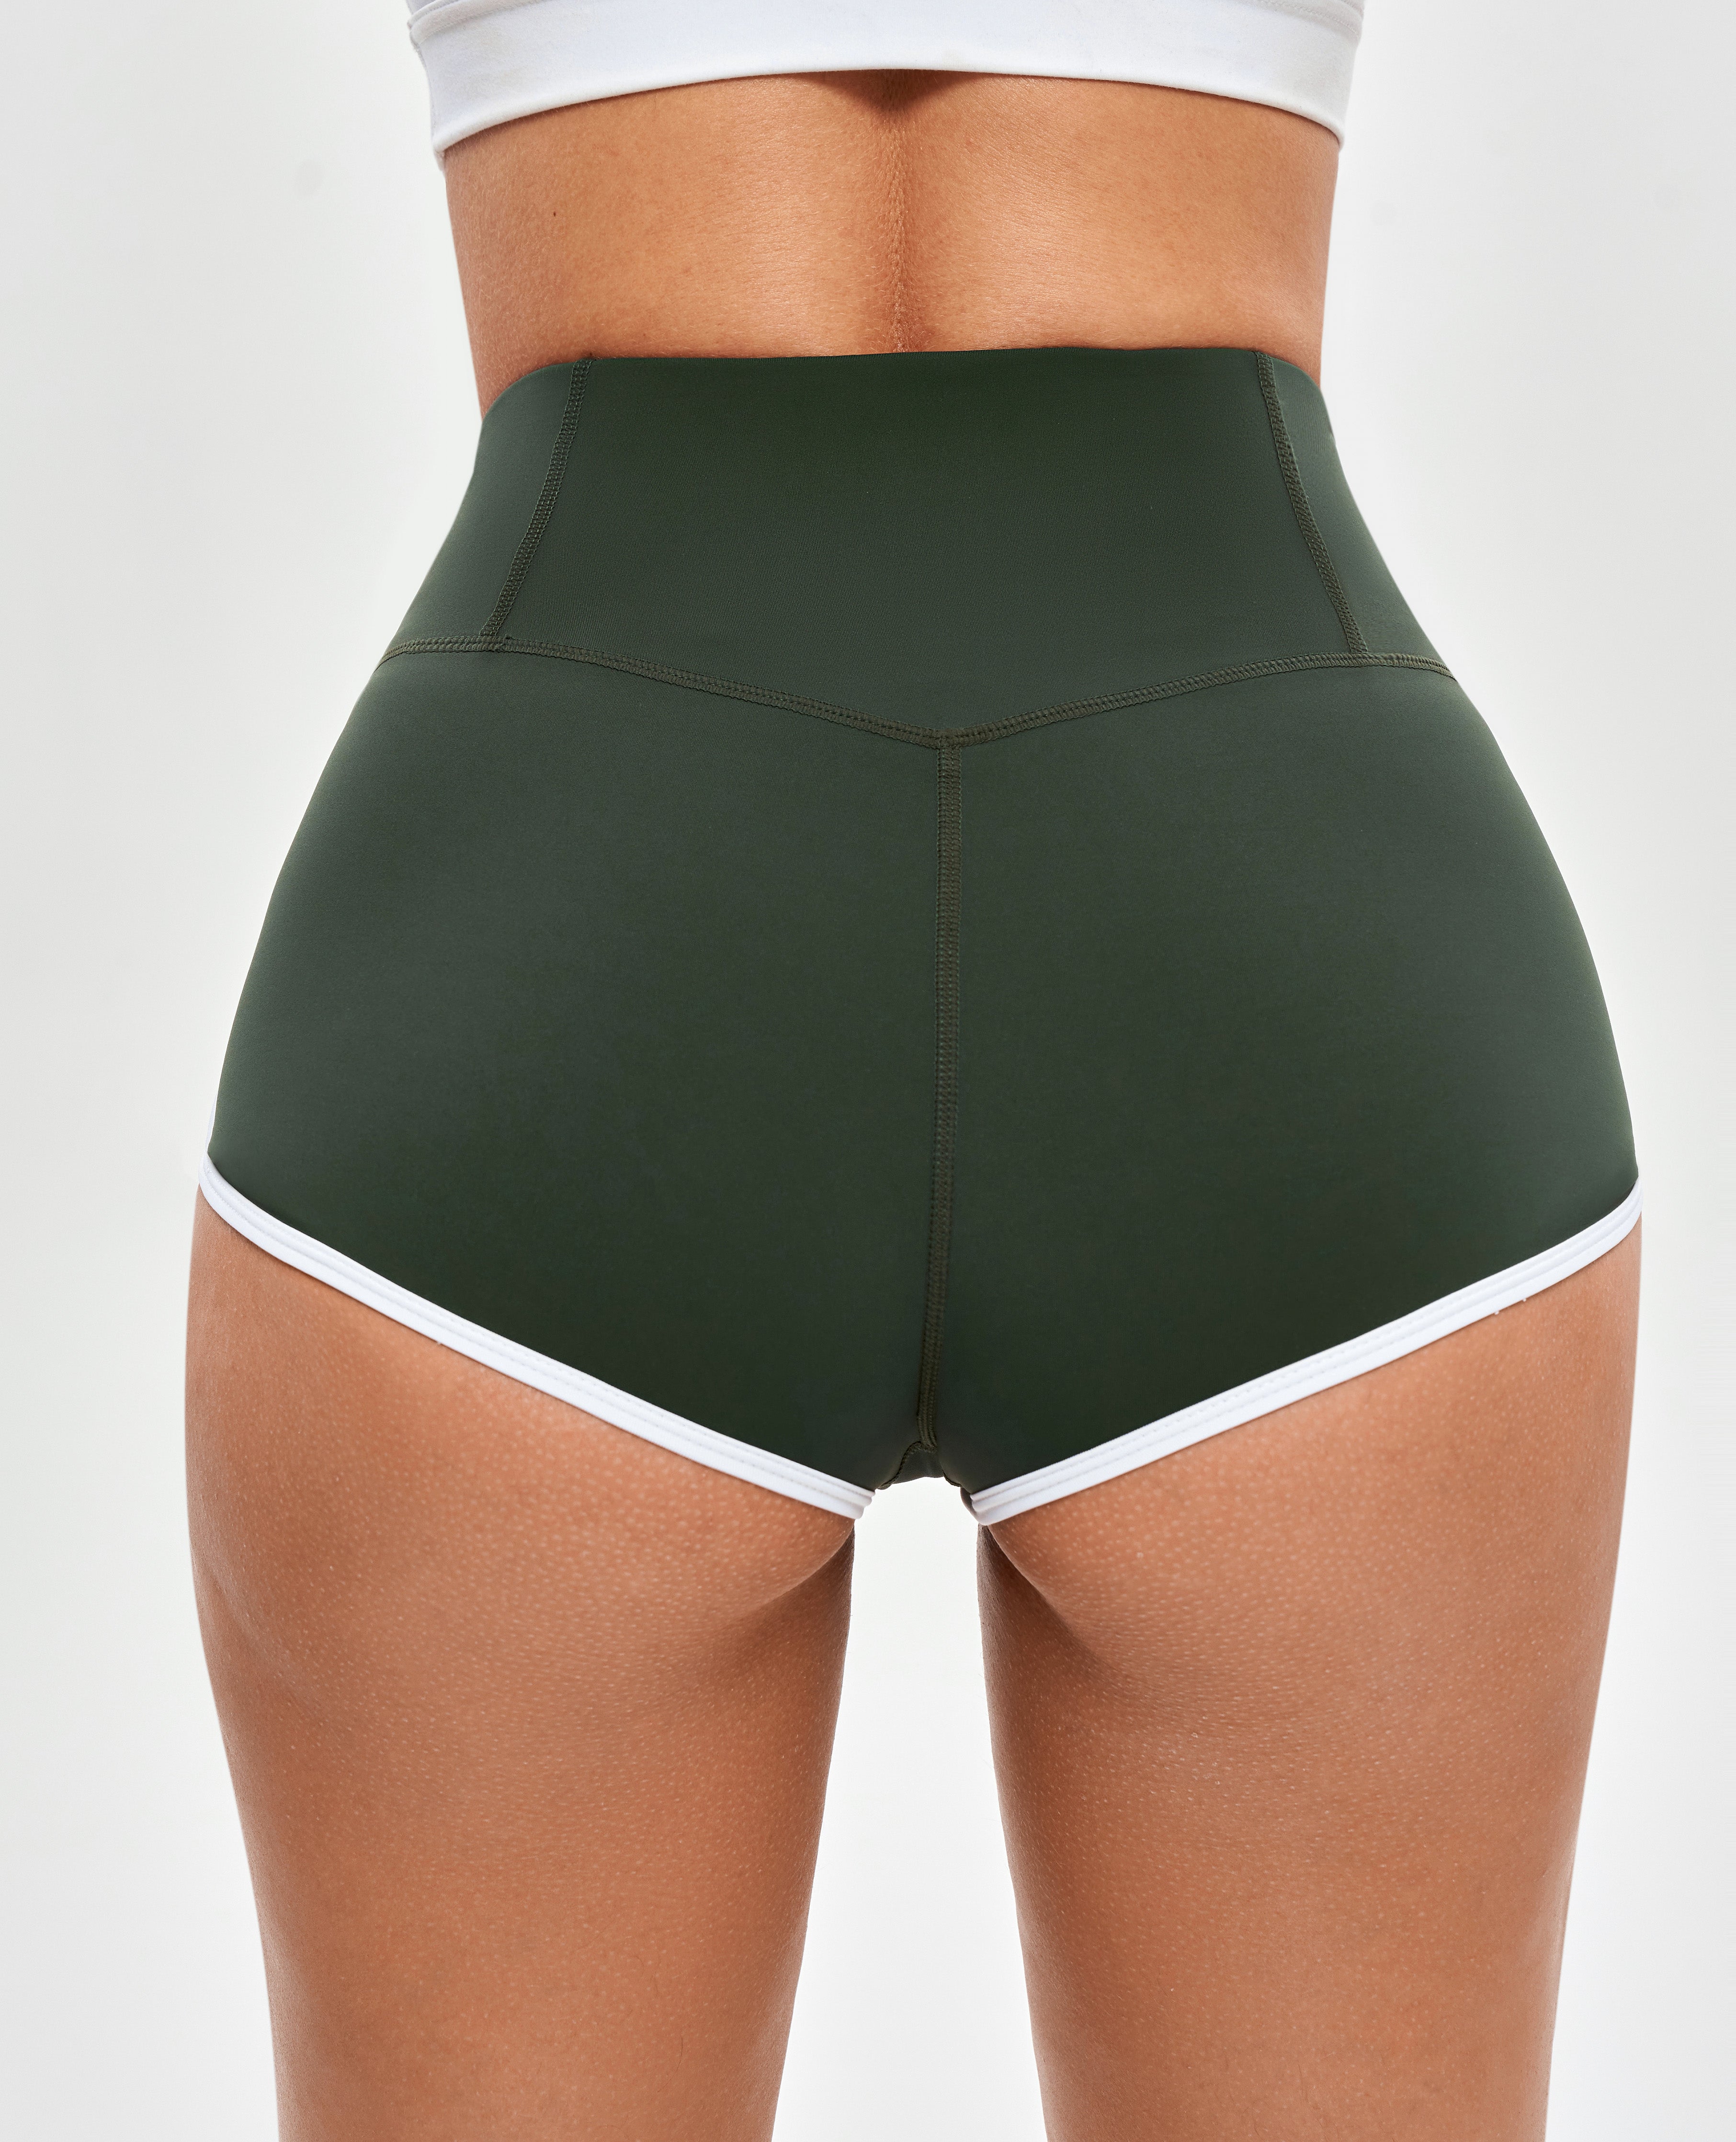 V-waist Lifting Butt Shorts - Dark Green